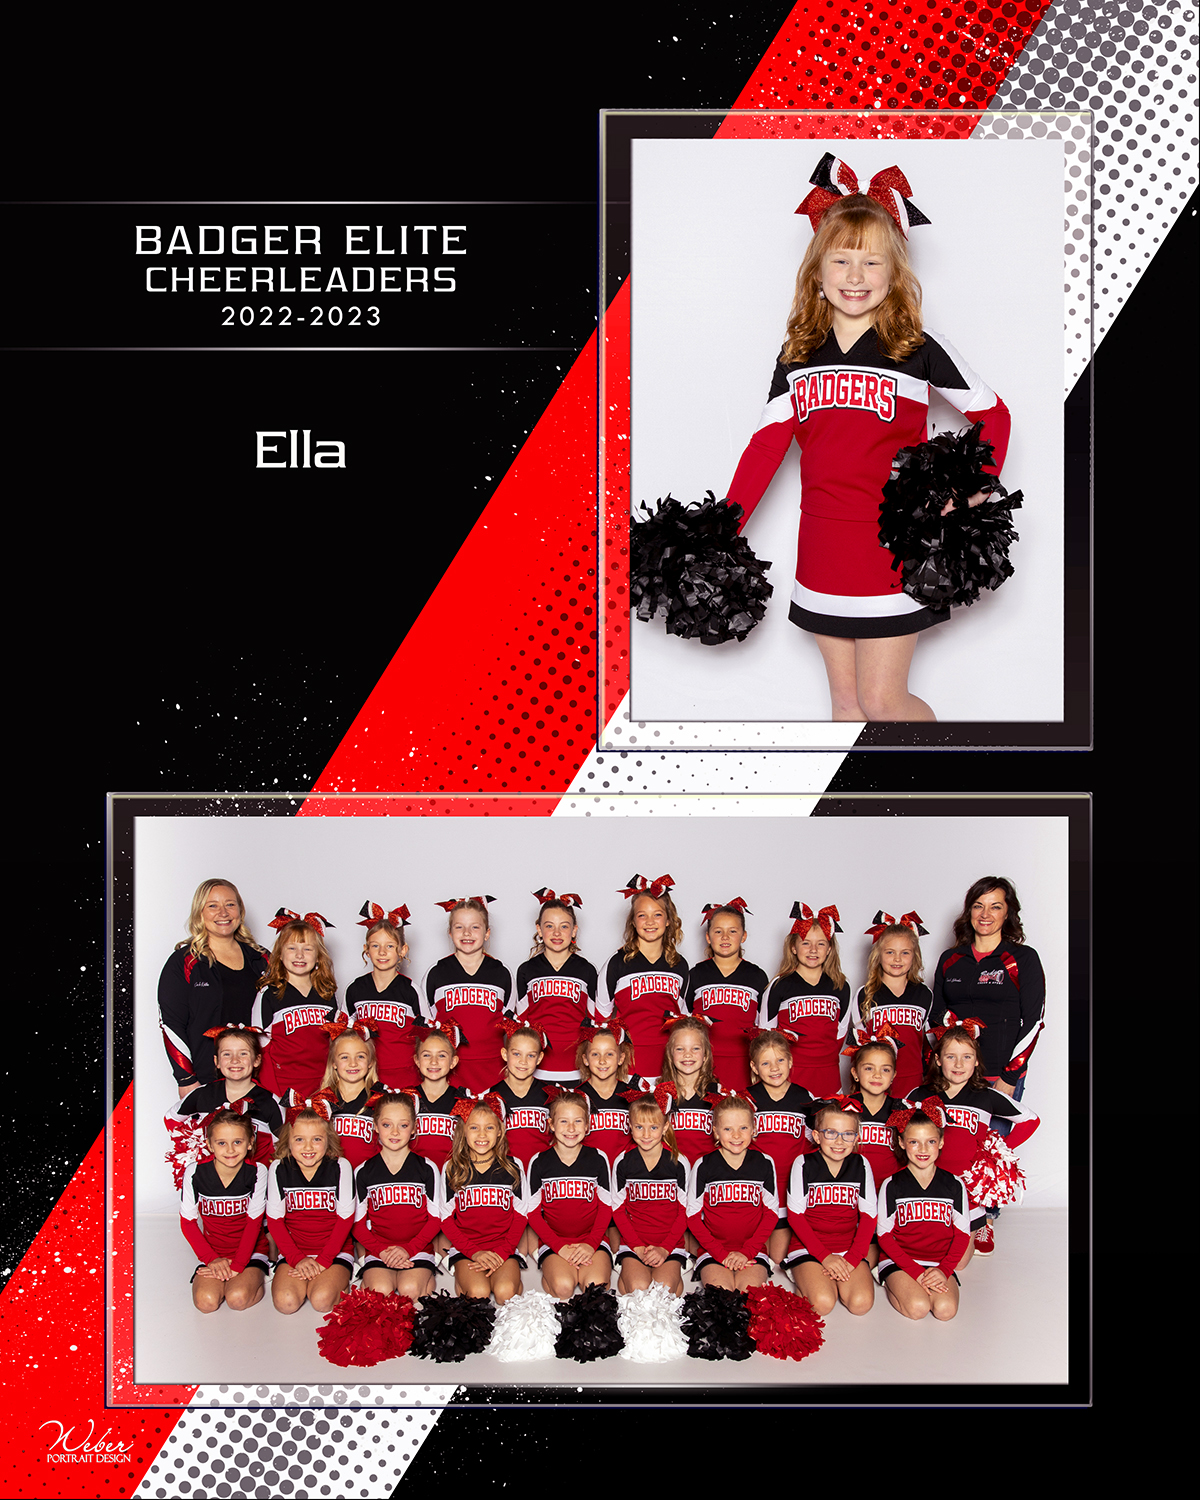 Ella-Badger EliteA